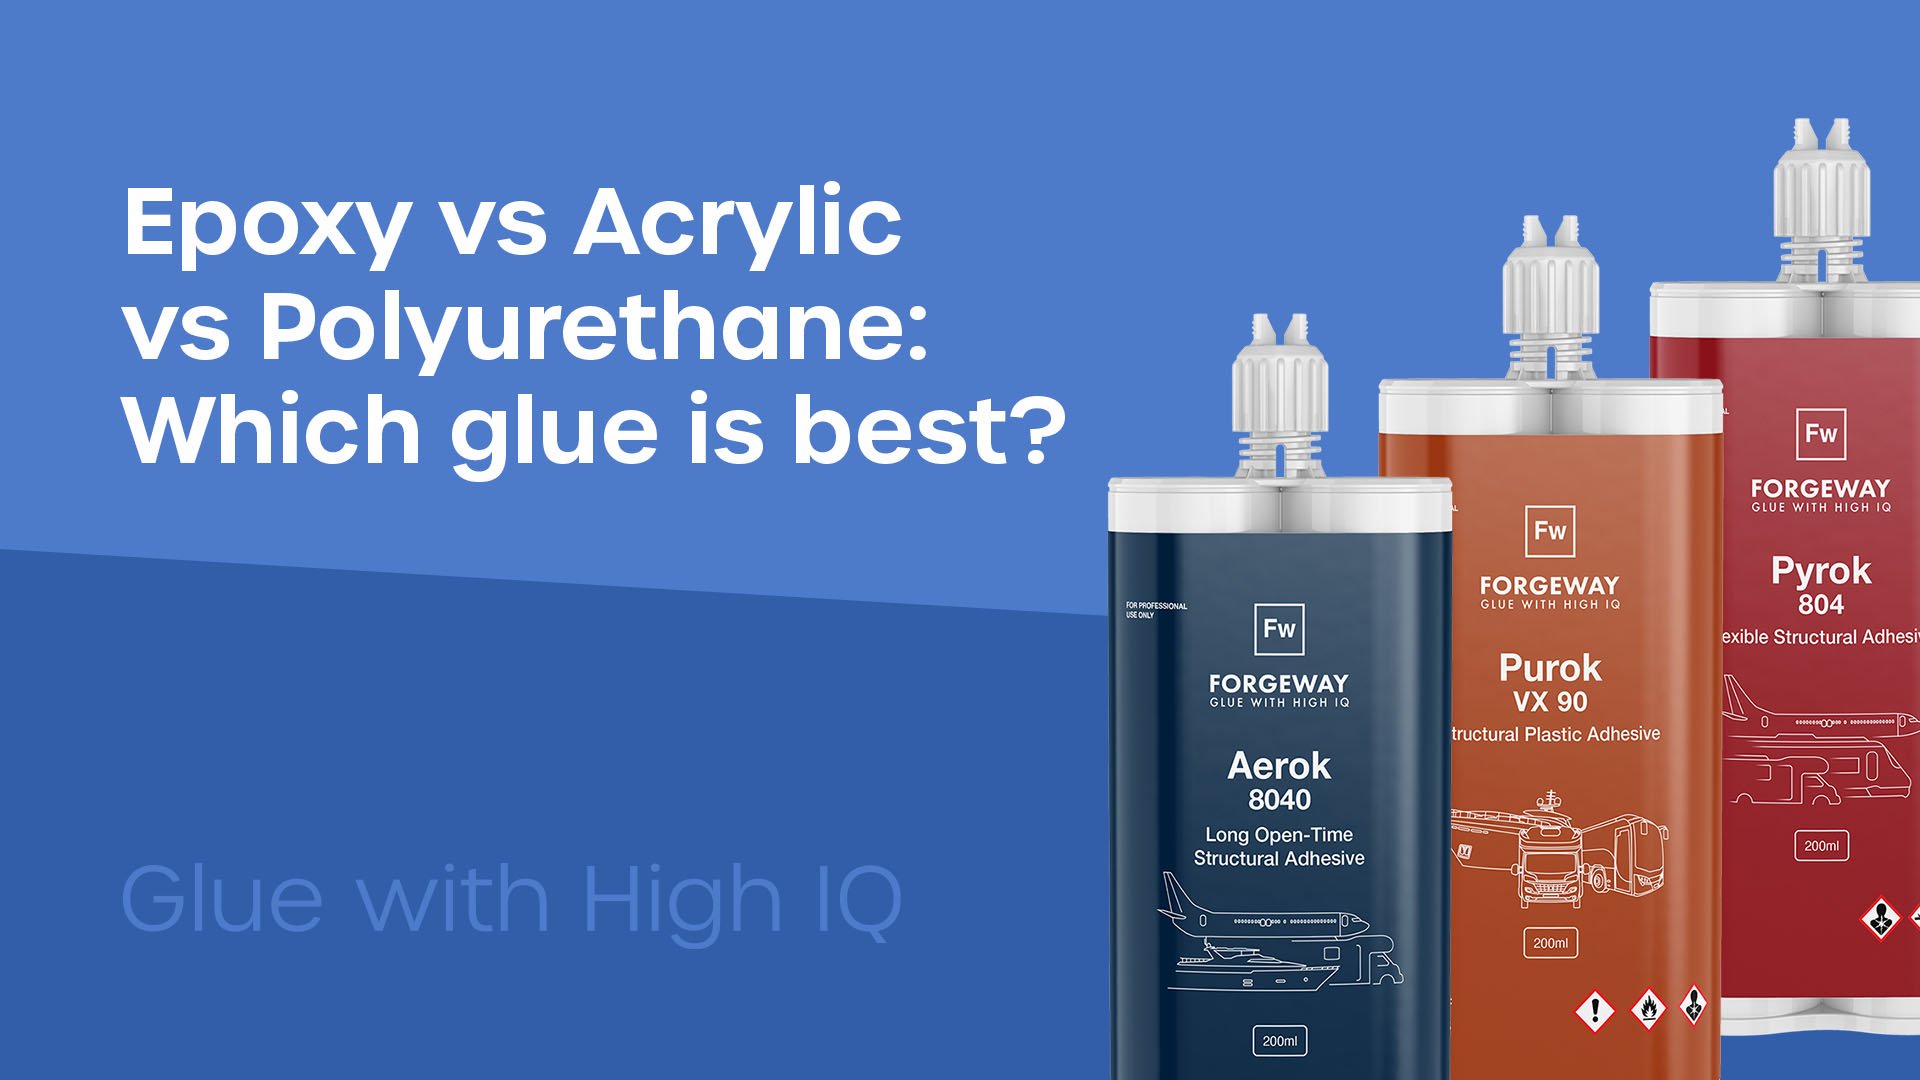 Epoxy v Acrylic v Polyurethane adhesives. Which is best?